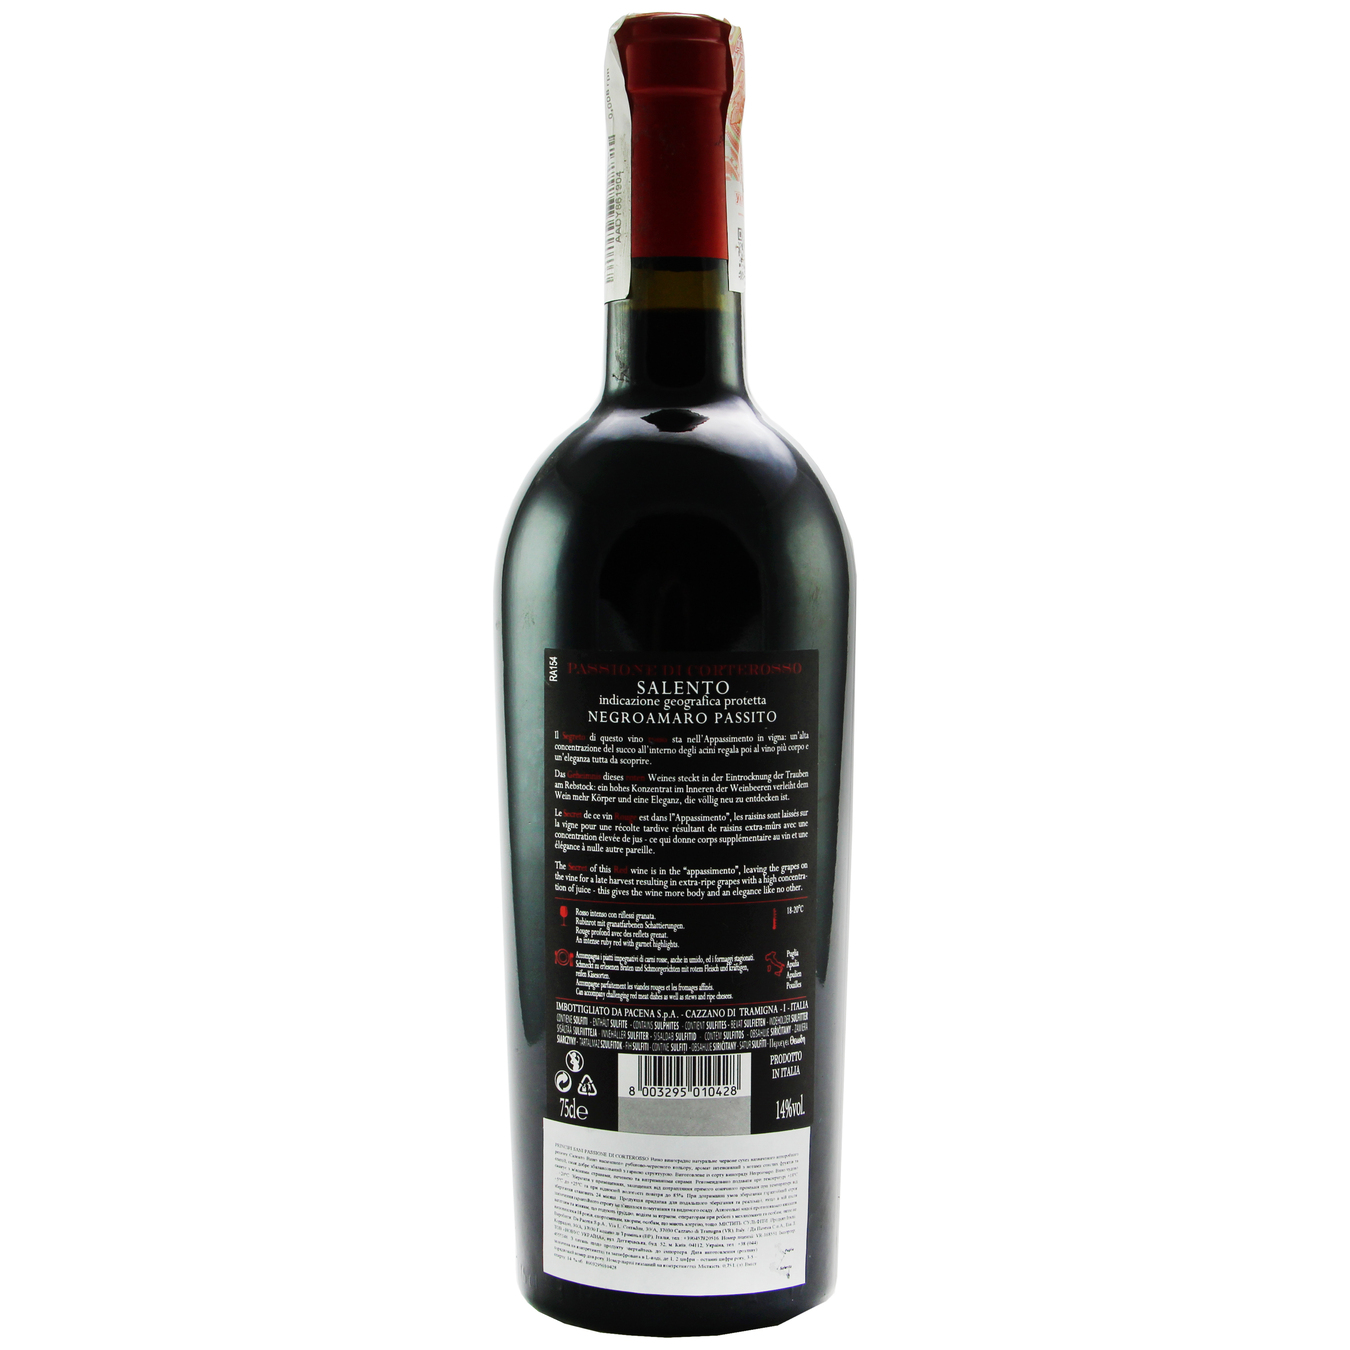 Вино Carlos Sani Passione di Corterosso 100% Appassimento Salento IGT красное сухое 14% 0,75л 2